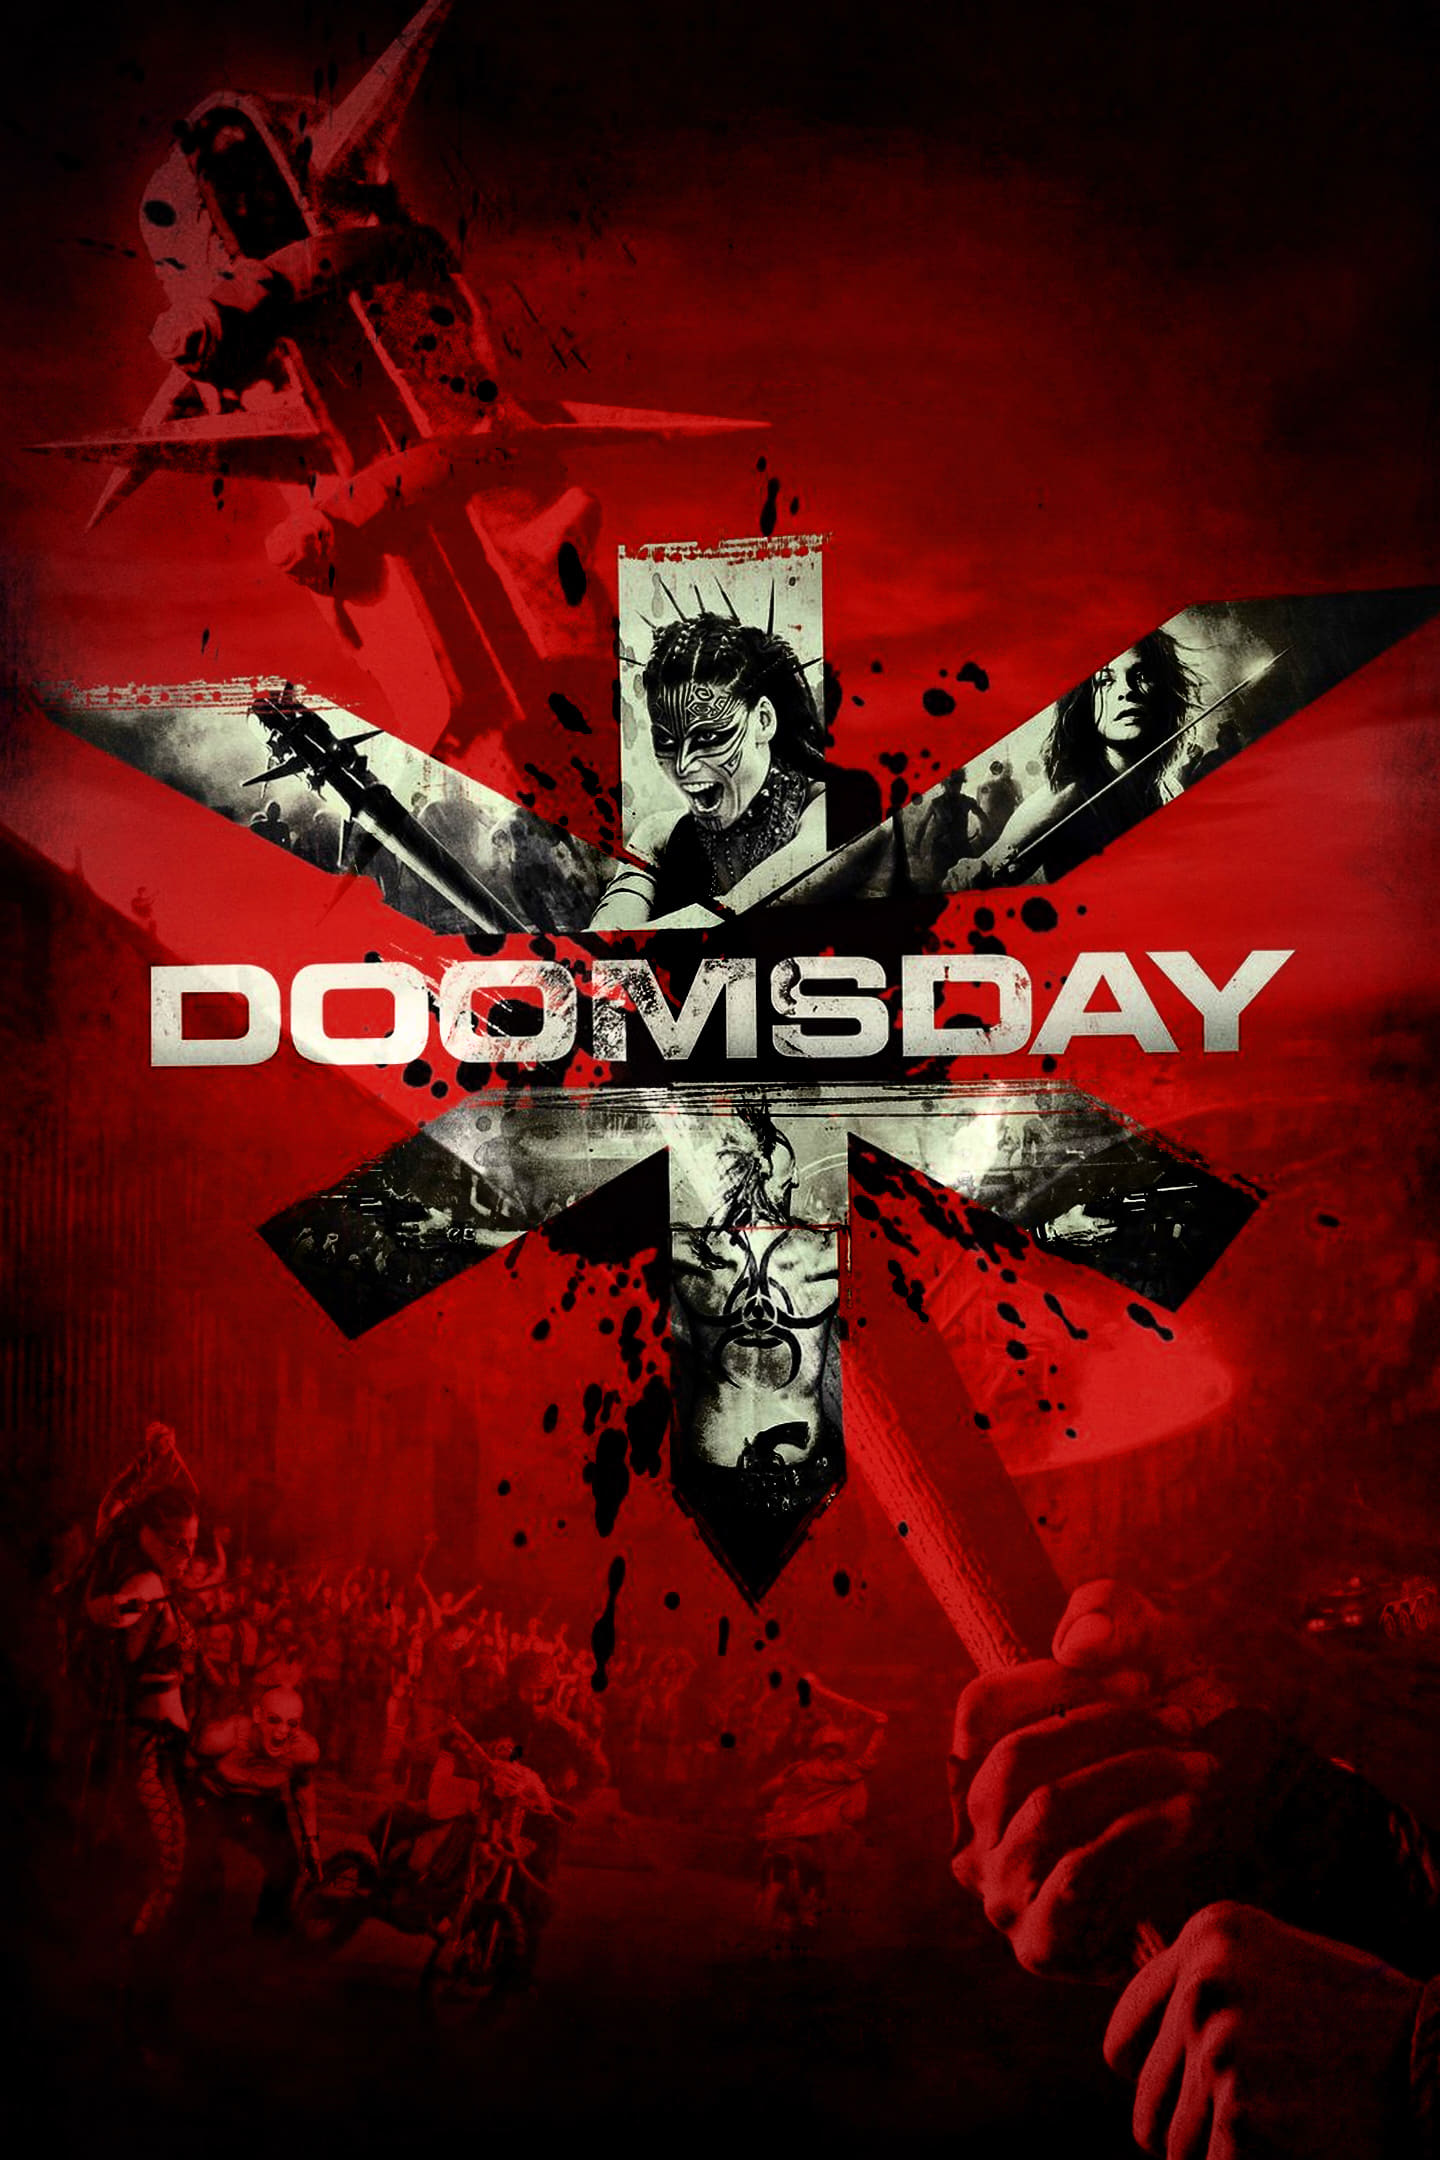 Doomsday: El Día del Juicio